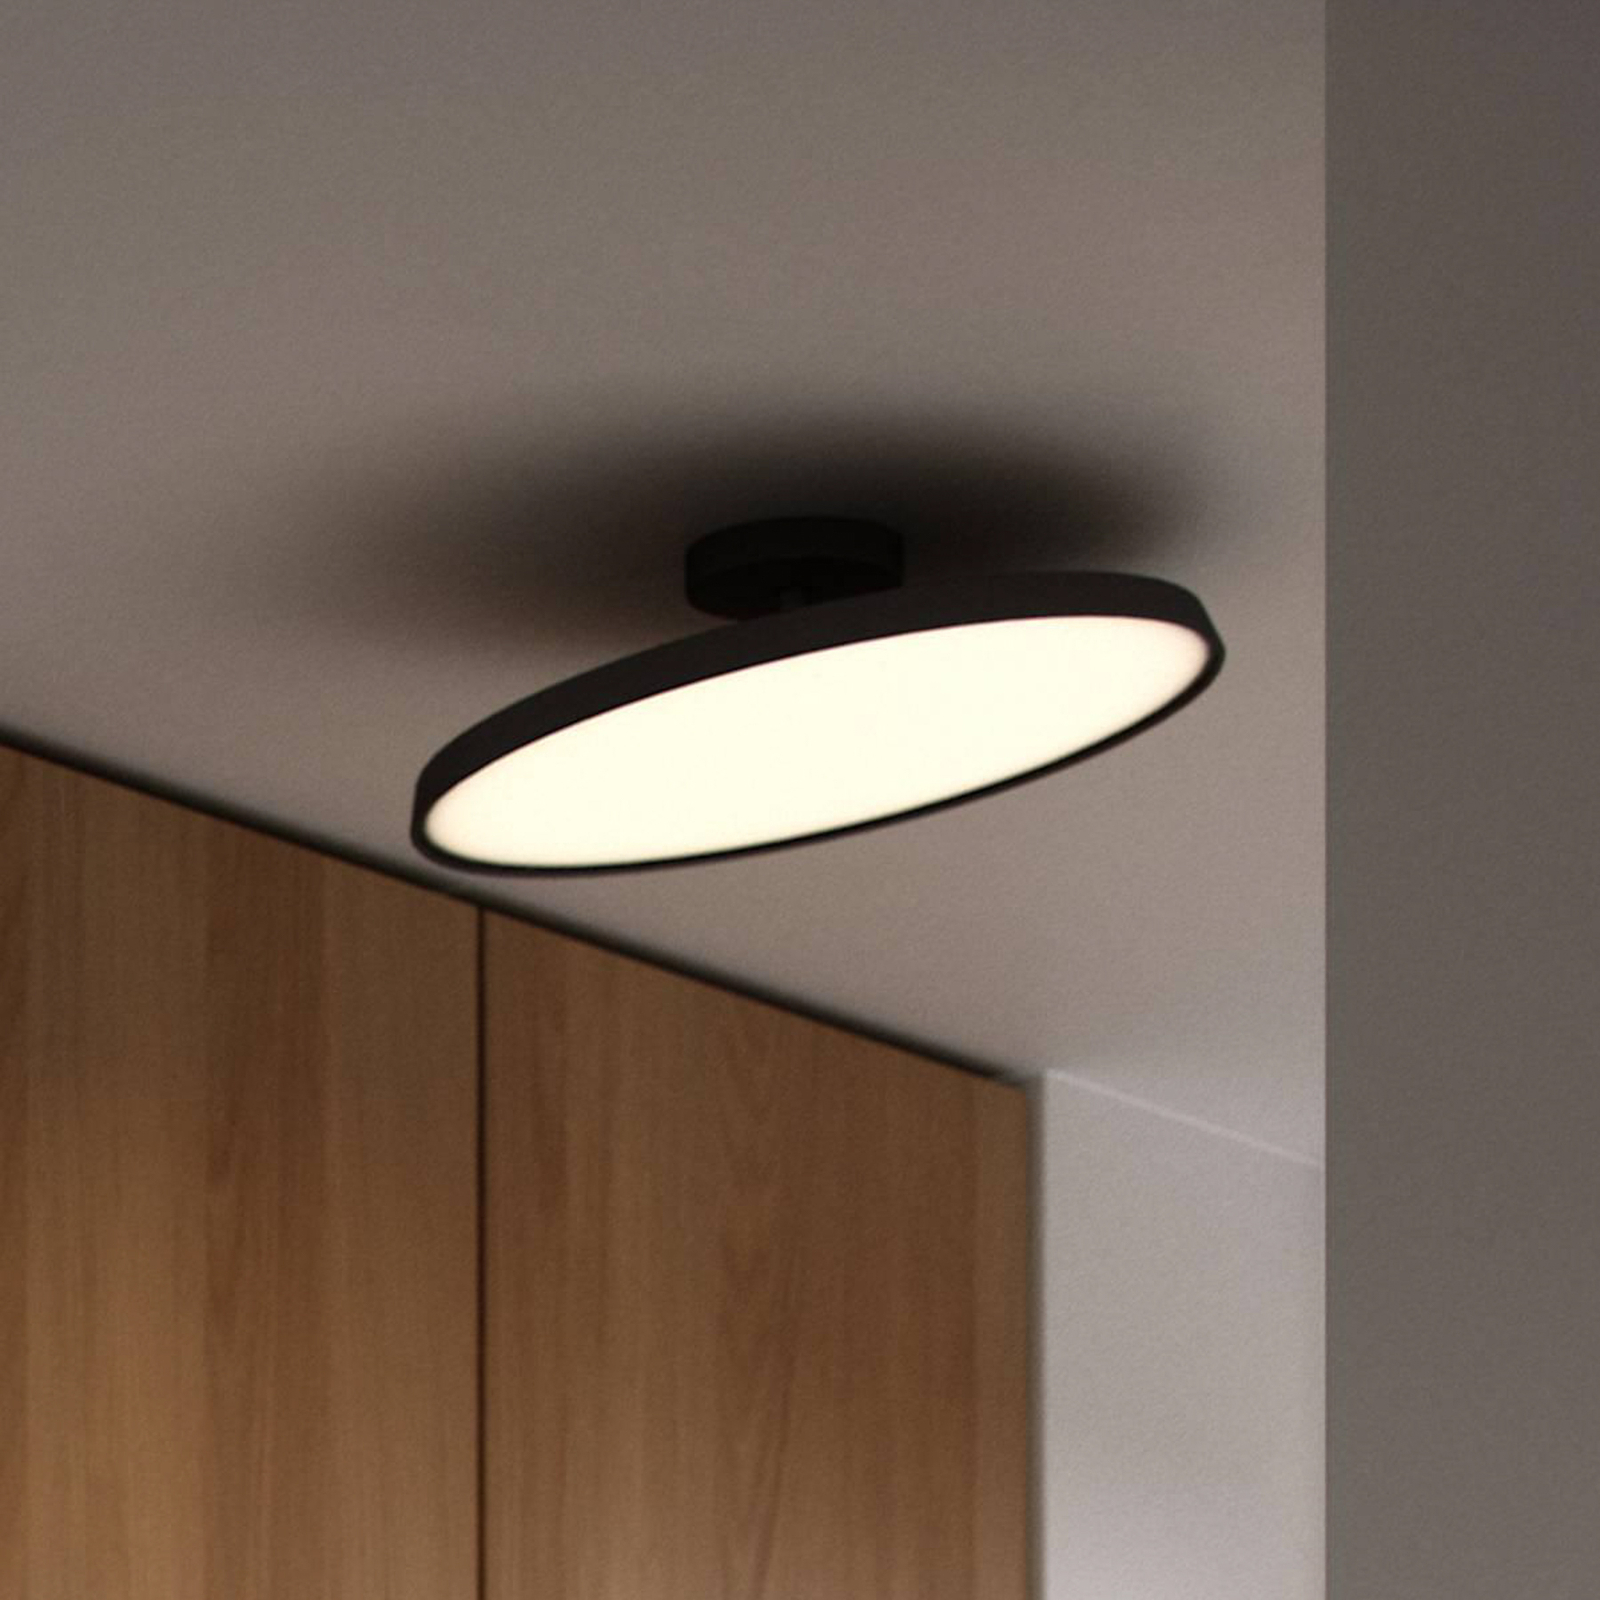 LED semi-flush ceiling light Kaito 2 Pro, Ø 40 cm, black, spacing